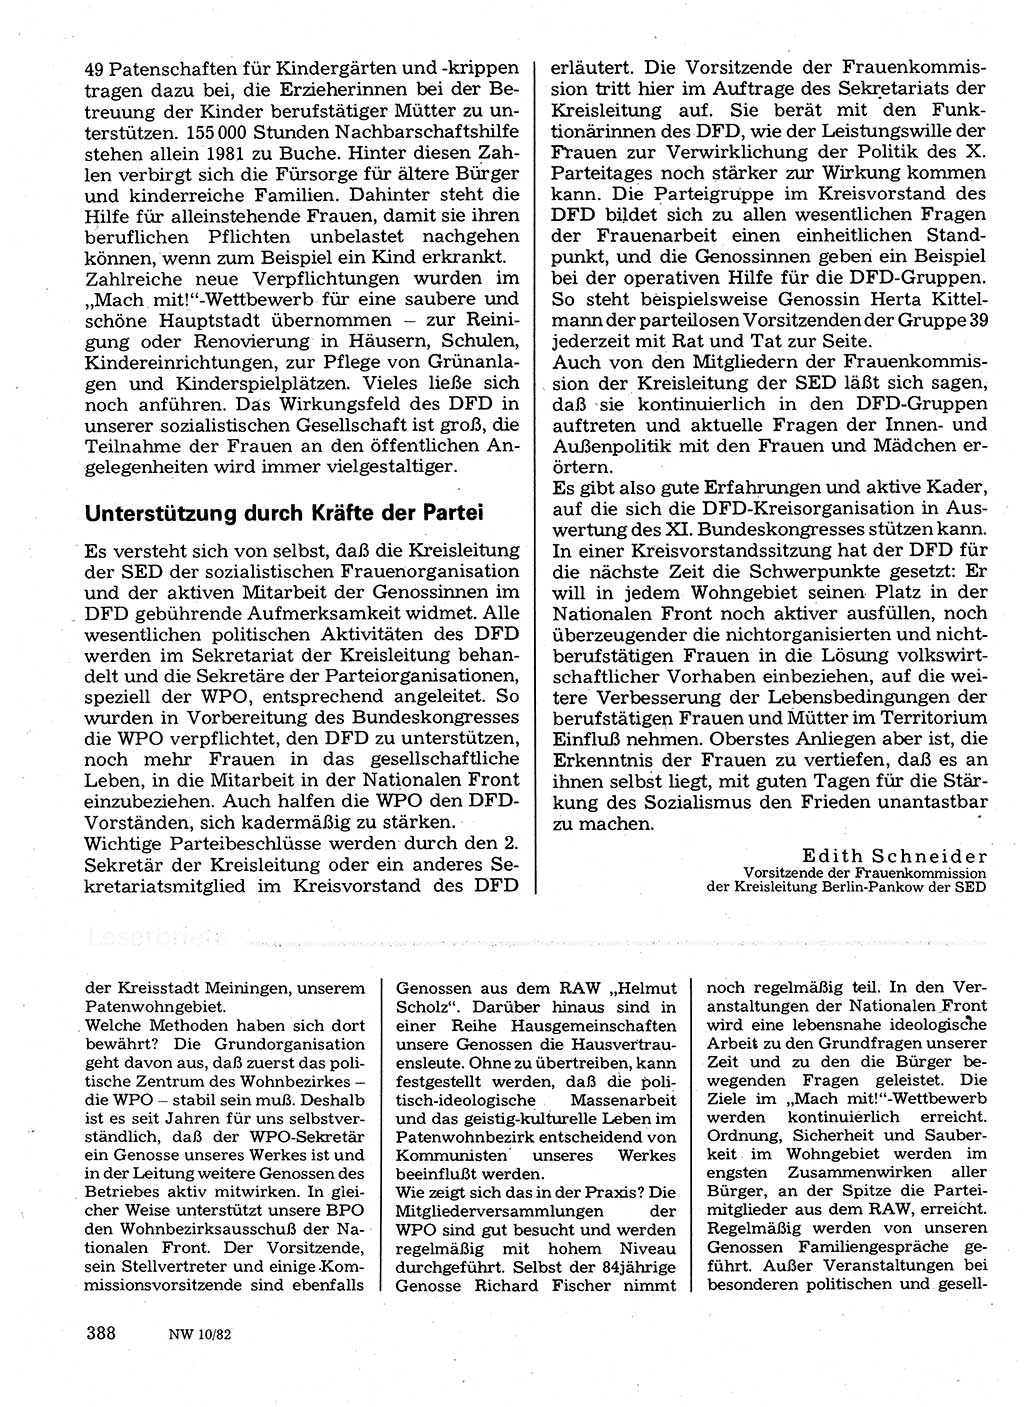 Neuer Weg (NW), Organ des Zentralkomitees (ZK) der SED (Sozialistische Einheitspartei Deutschlands) für Fragen des Parteilebens, 37. Jahrgang [Deutsche Demokratische Republik (DDR)] 1982, Seite 388 (NW ZK SED DDR 1982, S. 388)